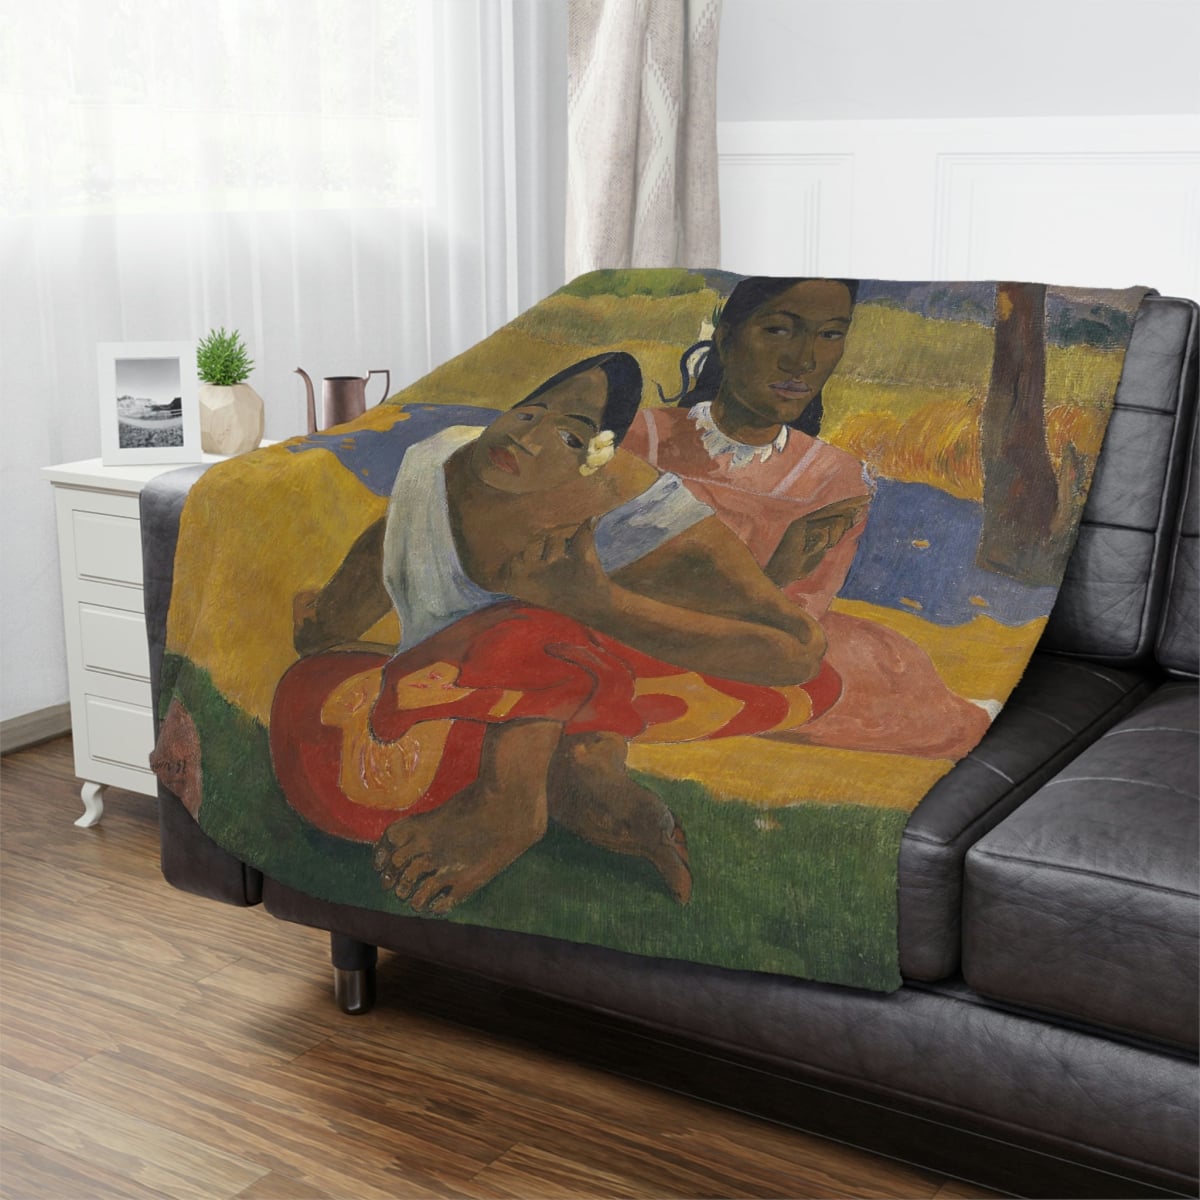 Artistic Living Room Decor - Gauguin Art Blanket